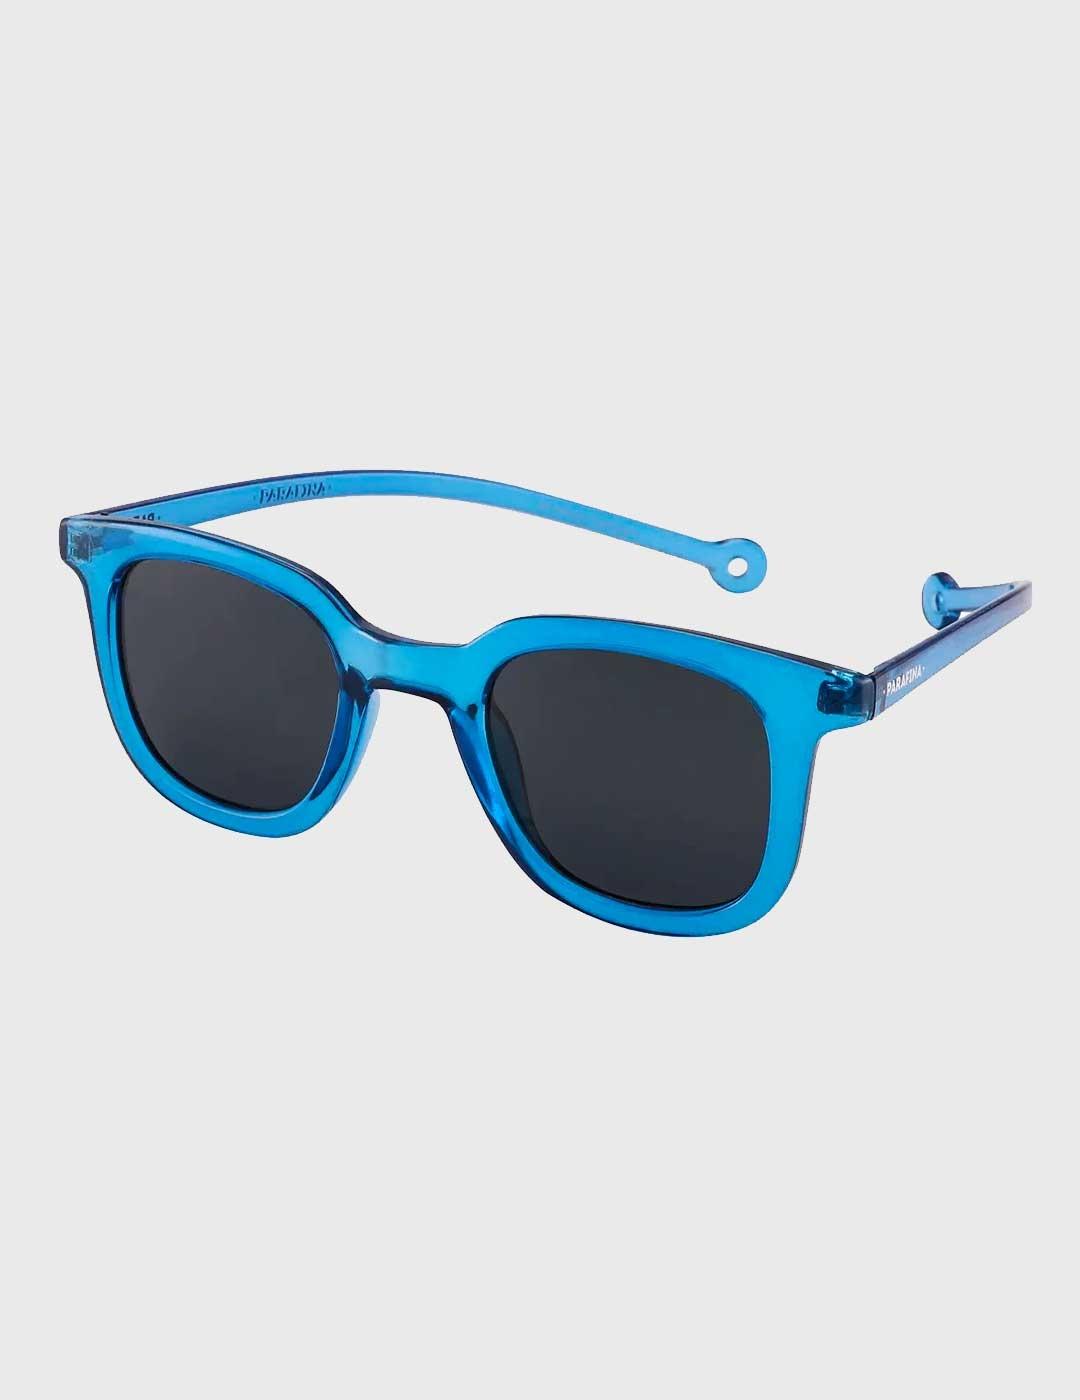 Gafas de Sol Parafina Cauce azules para hombre y mujer